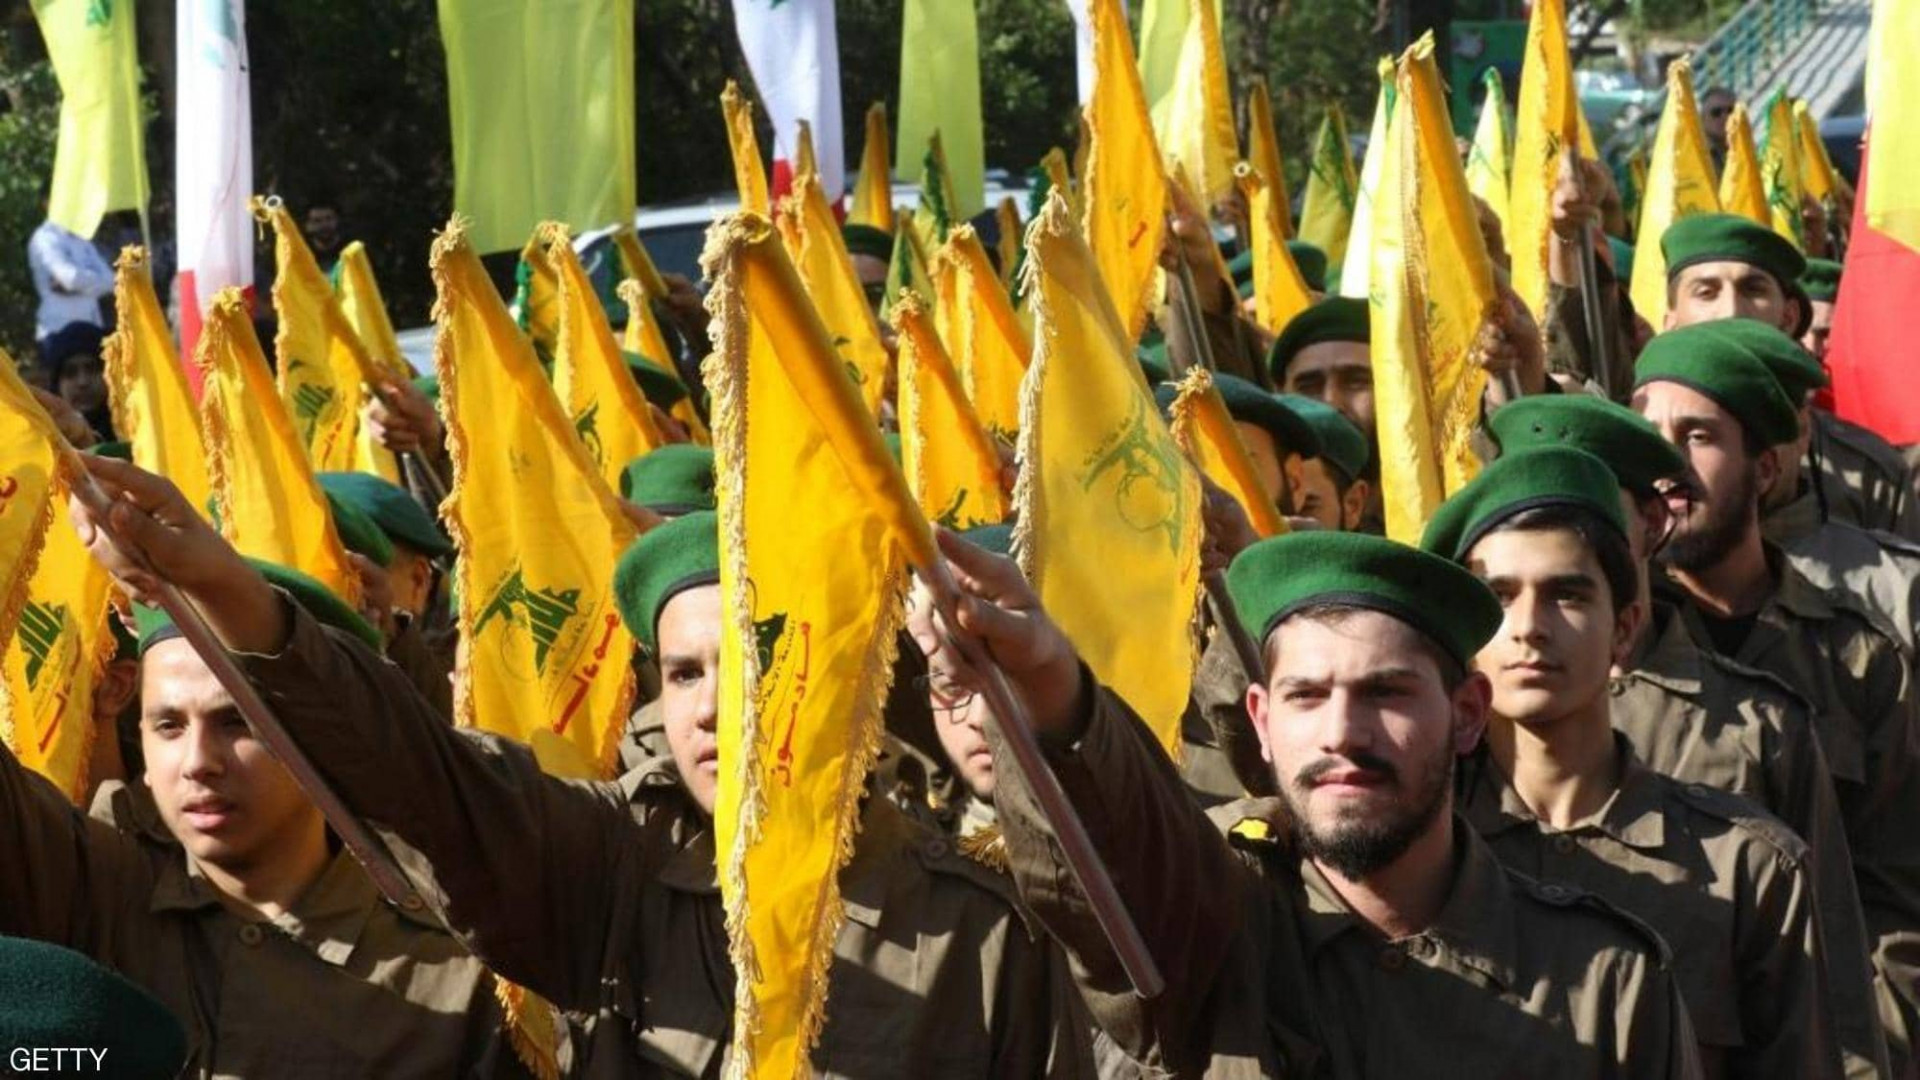 Lebanese Hezbollah member killed in Israeli strike